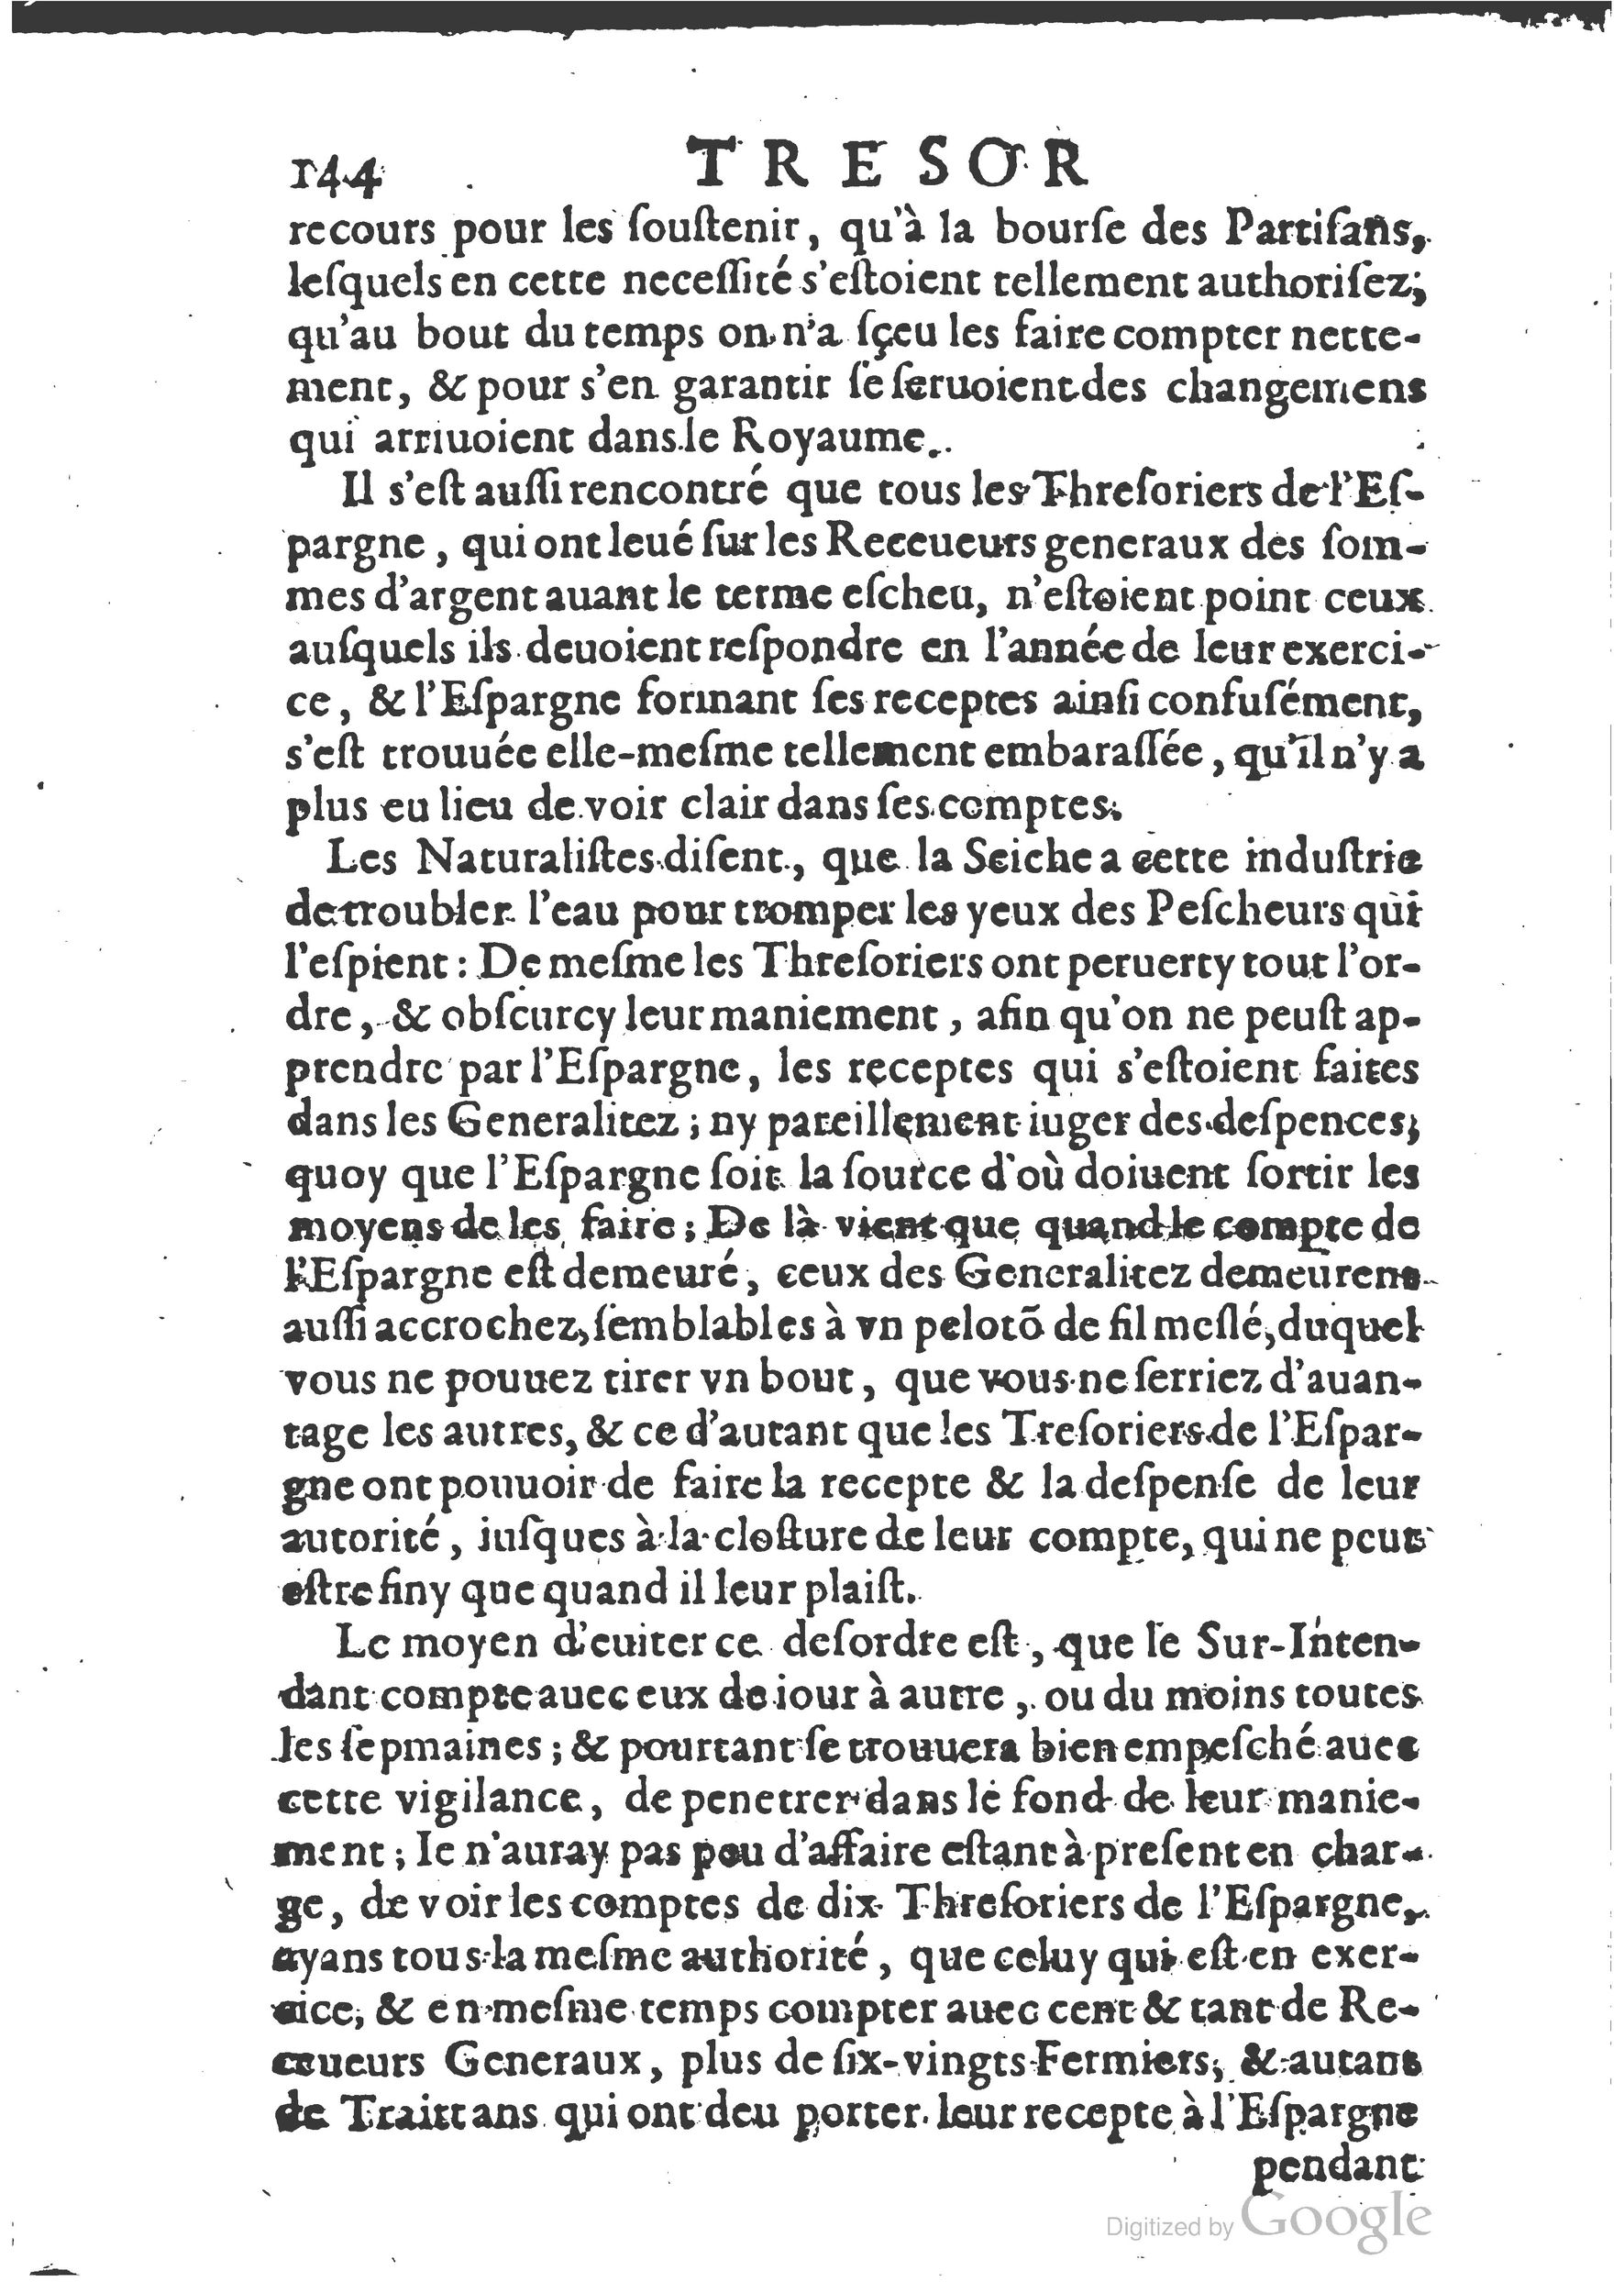 1654 Trésor des harangues, remontrances et oraisons funèbres Robin_BM Lyon_Page_163.jpg